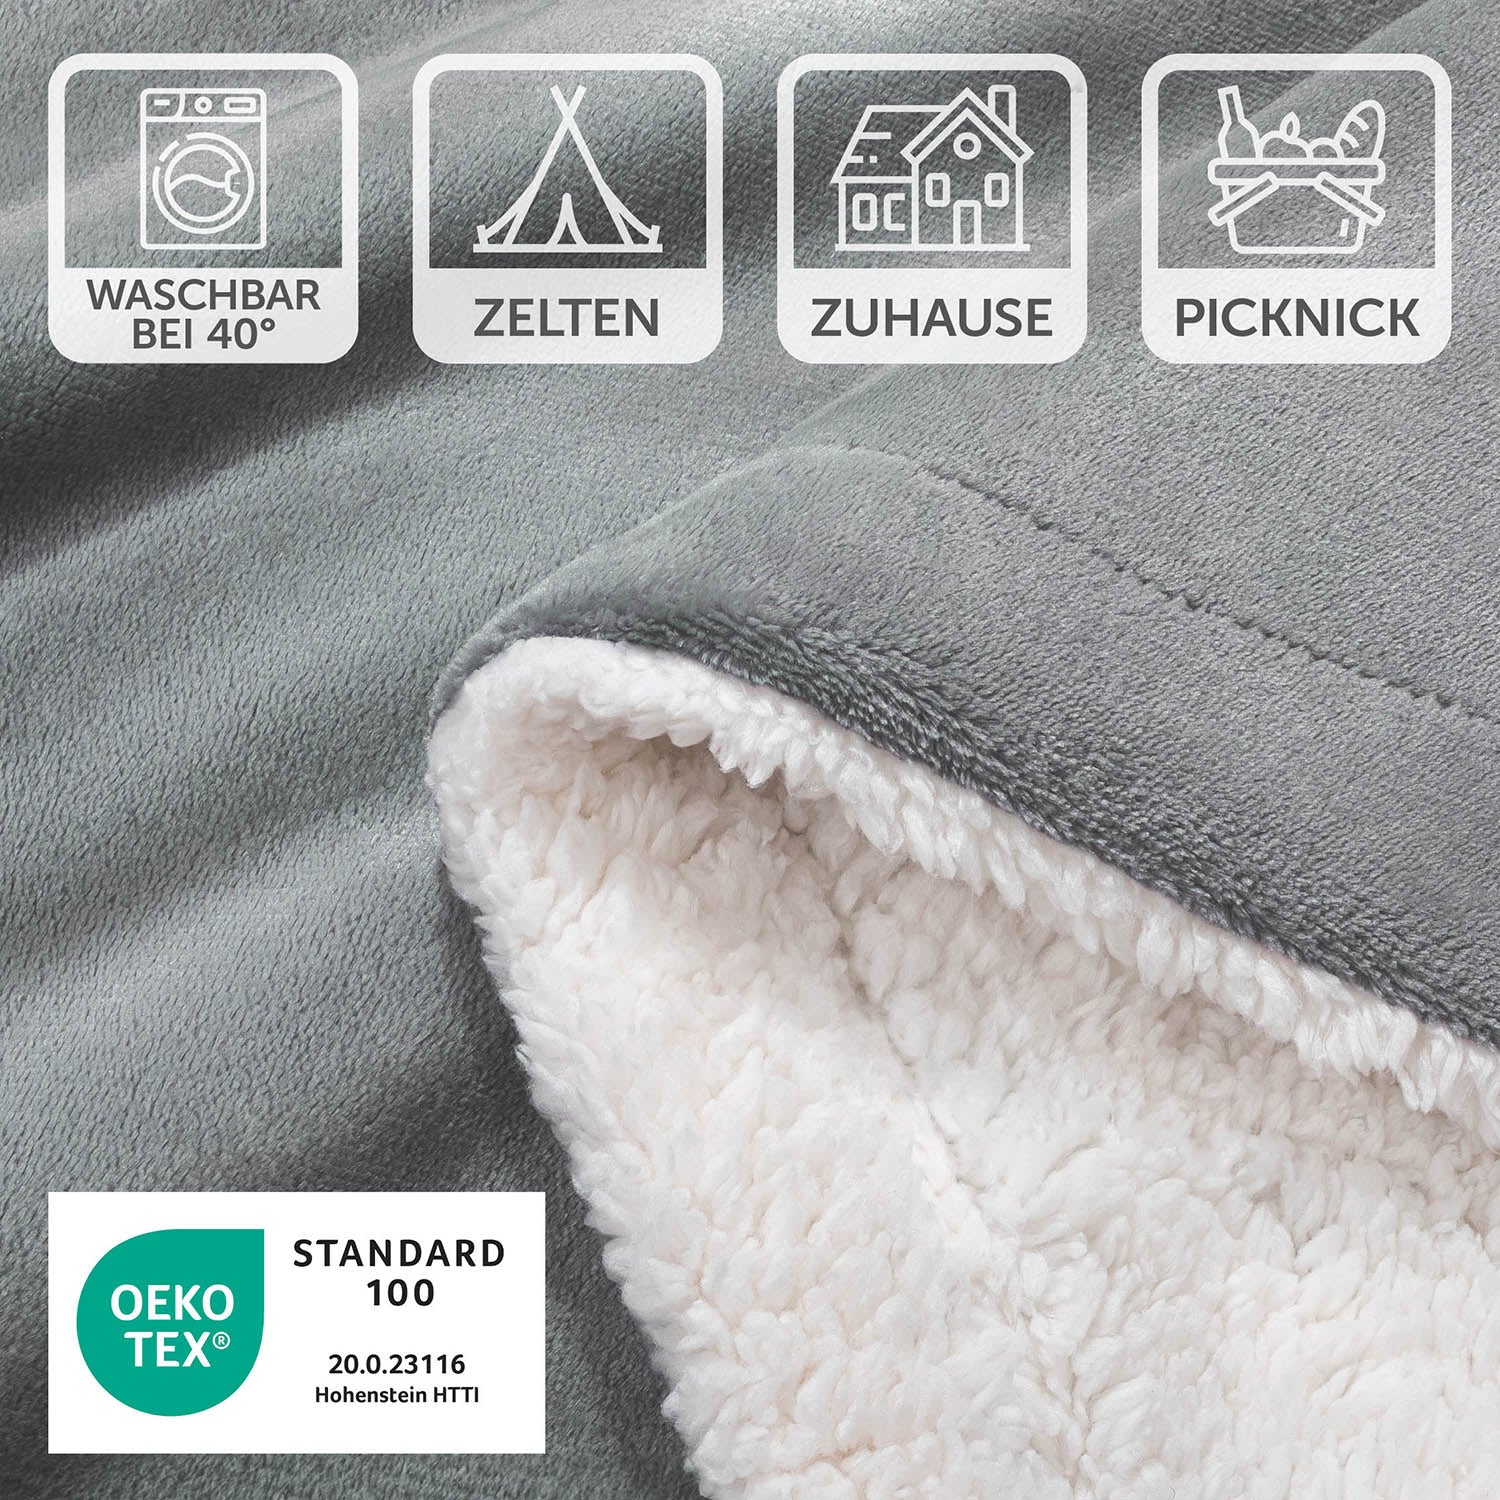 Detailansicht einer grauen Decke mit Pflegesymbolen und OEKO-TEX Standard 100 Siegel, waschbar bei 40 Grad, geeignet für Zelten, Zuhause und Picknick.